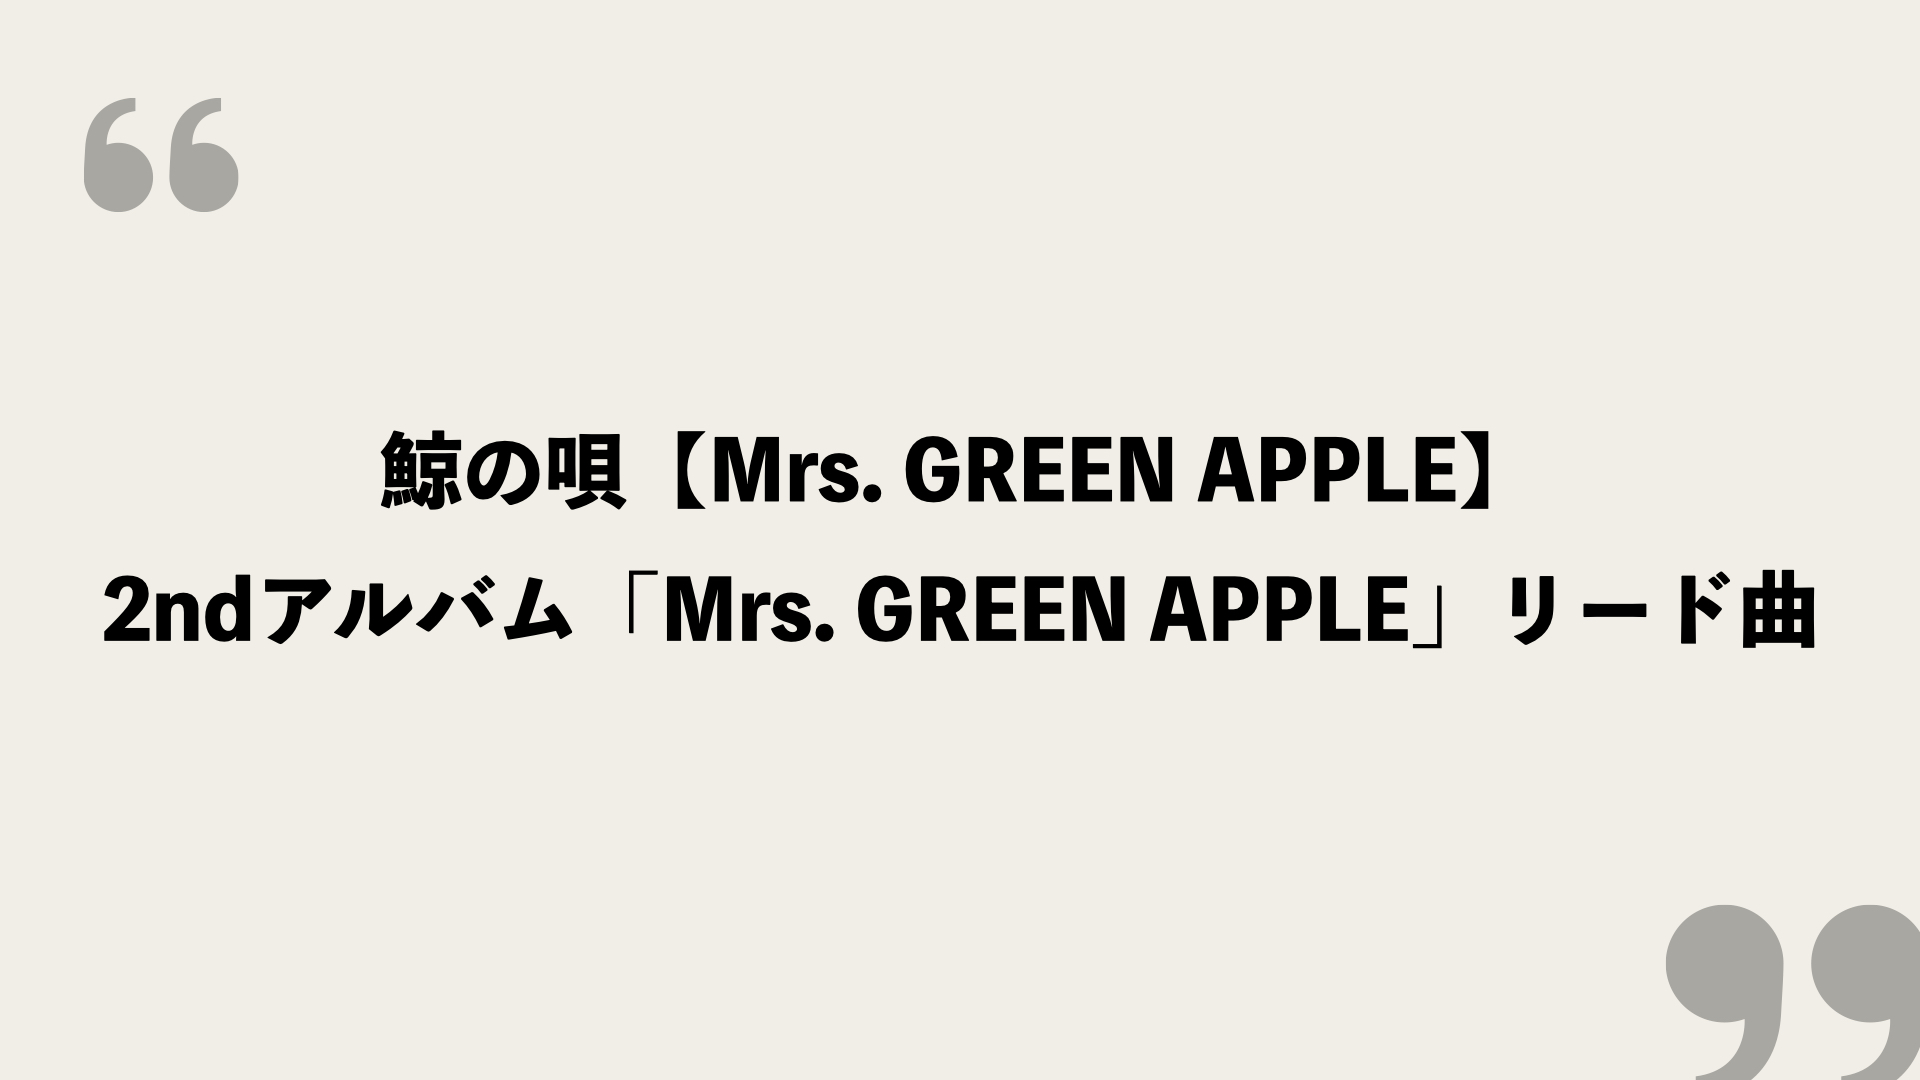 鯨の唄 Mrs Green Apple 歌詞の意味を考察 2ndアルバムのリード曲 Framu Media